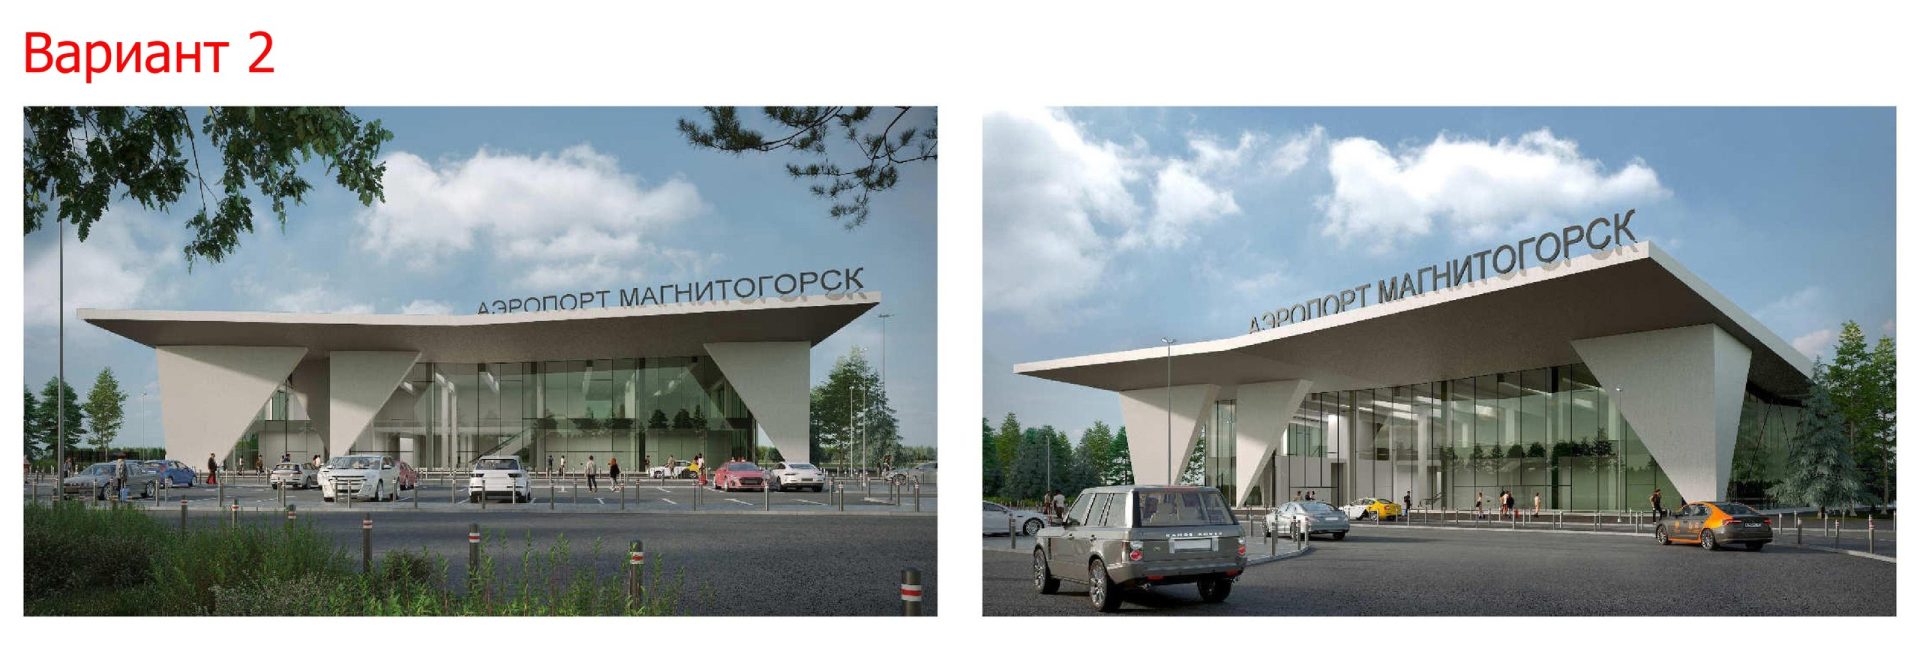 Как будет выглядеть новый аэропорт Магнитогорска?